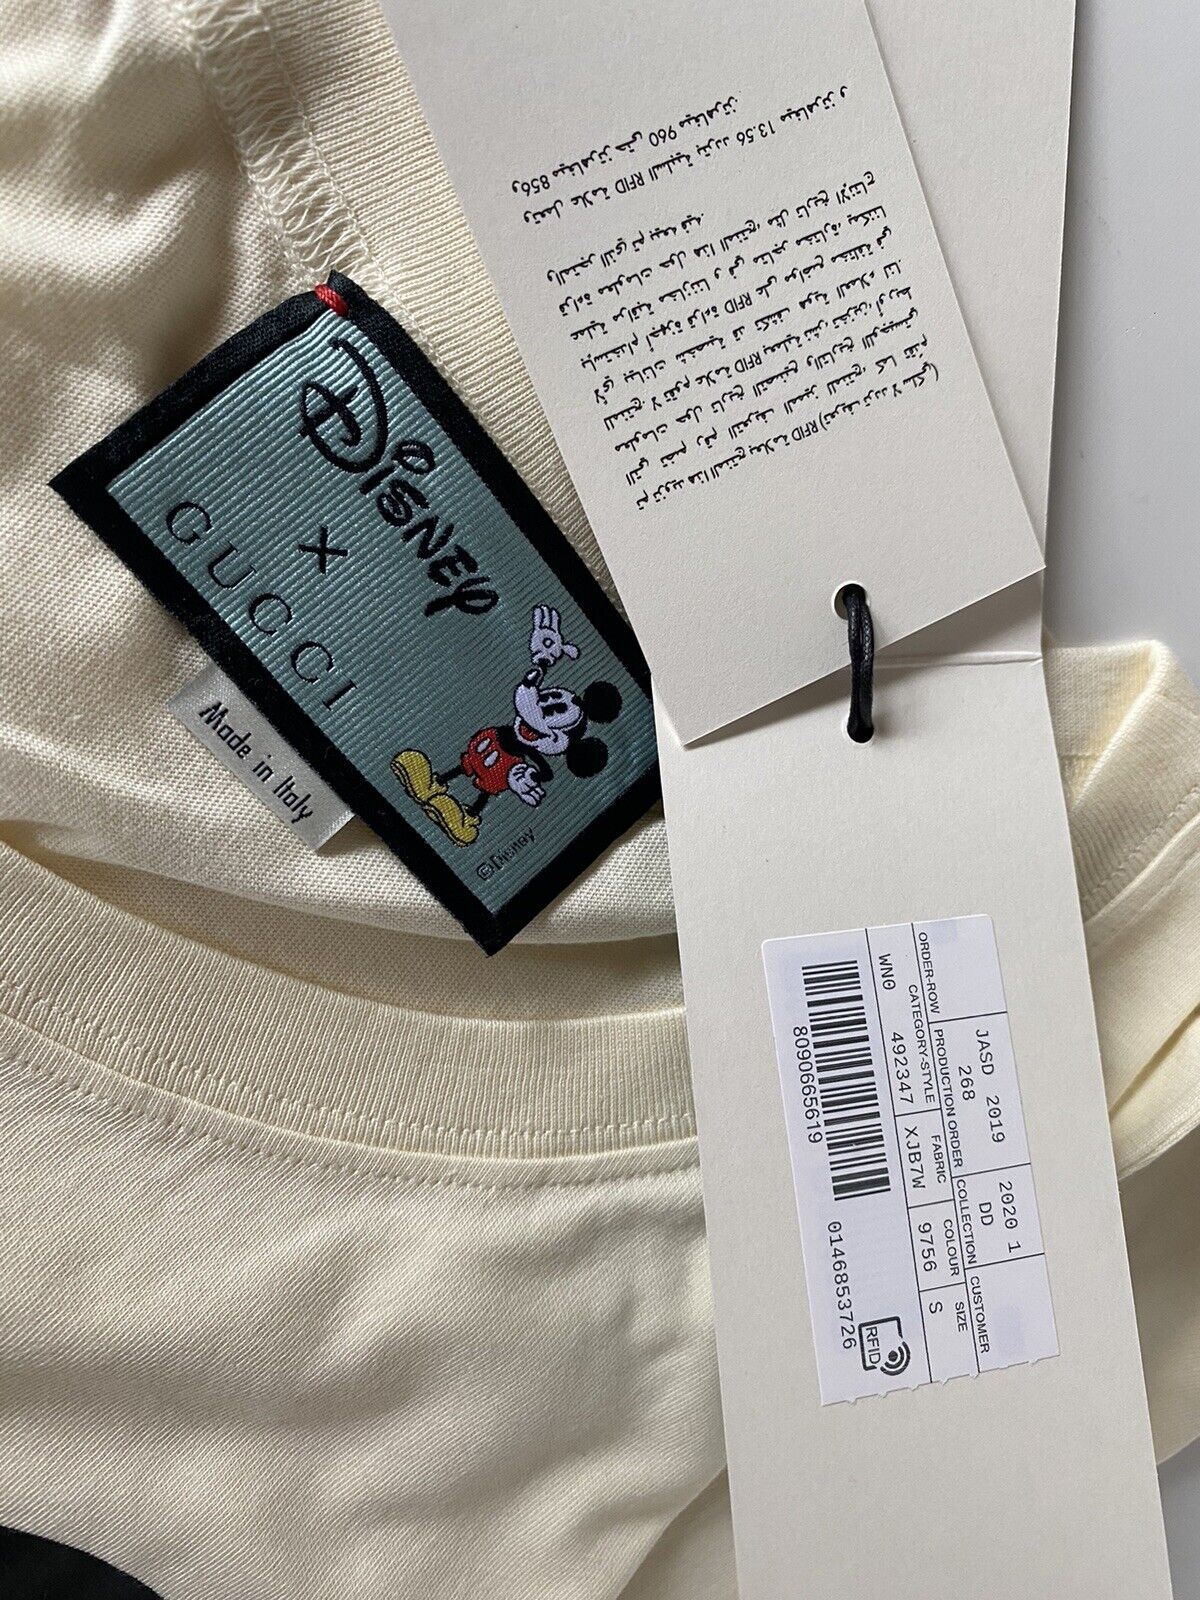 Neu mit Etikett: Gucci Mickey Mouse Tan Baumwolljersey-T-Shirt Small 492347 Italien